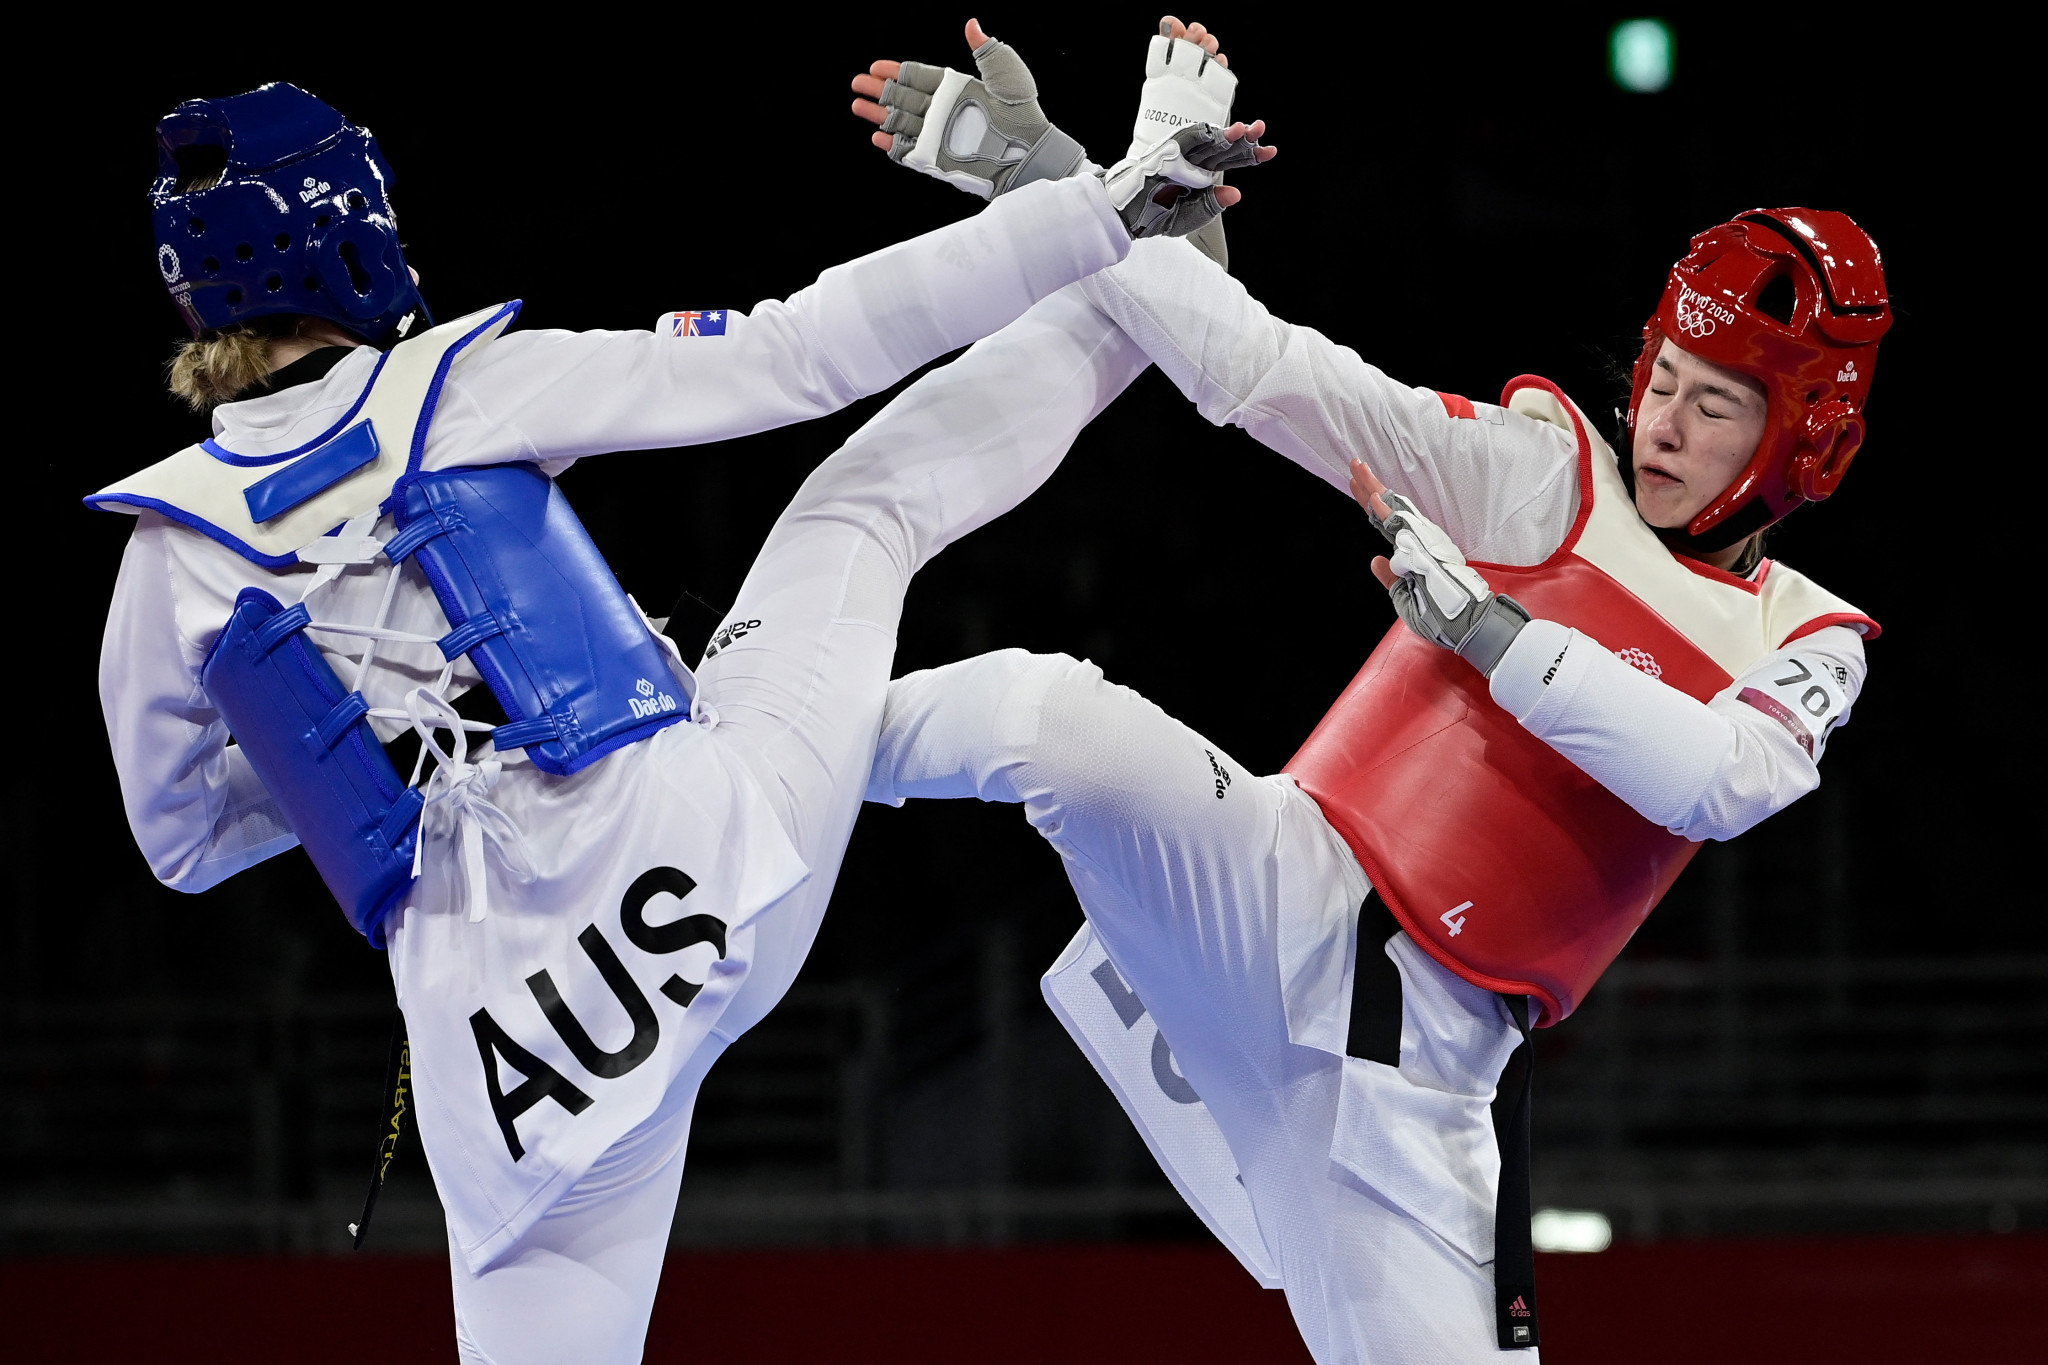 Lee named high-performance coach for taekwondo in Australia